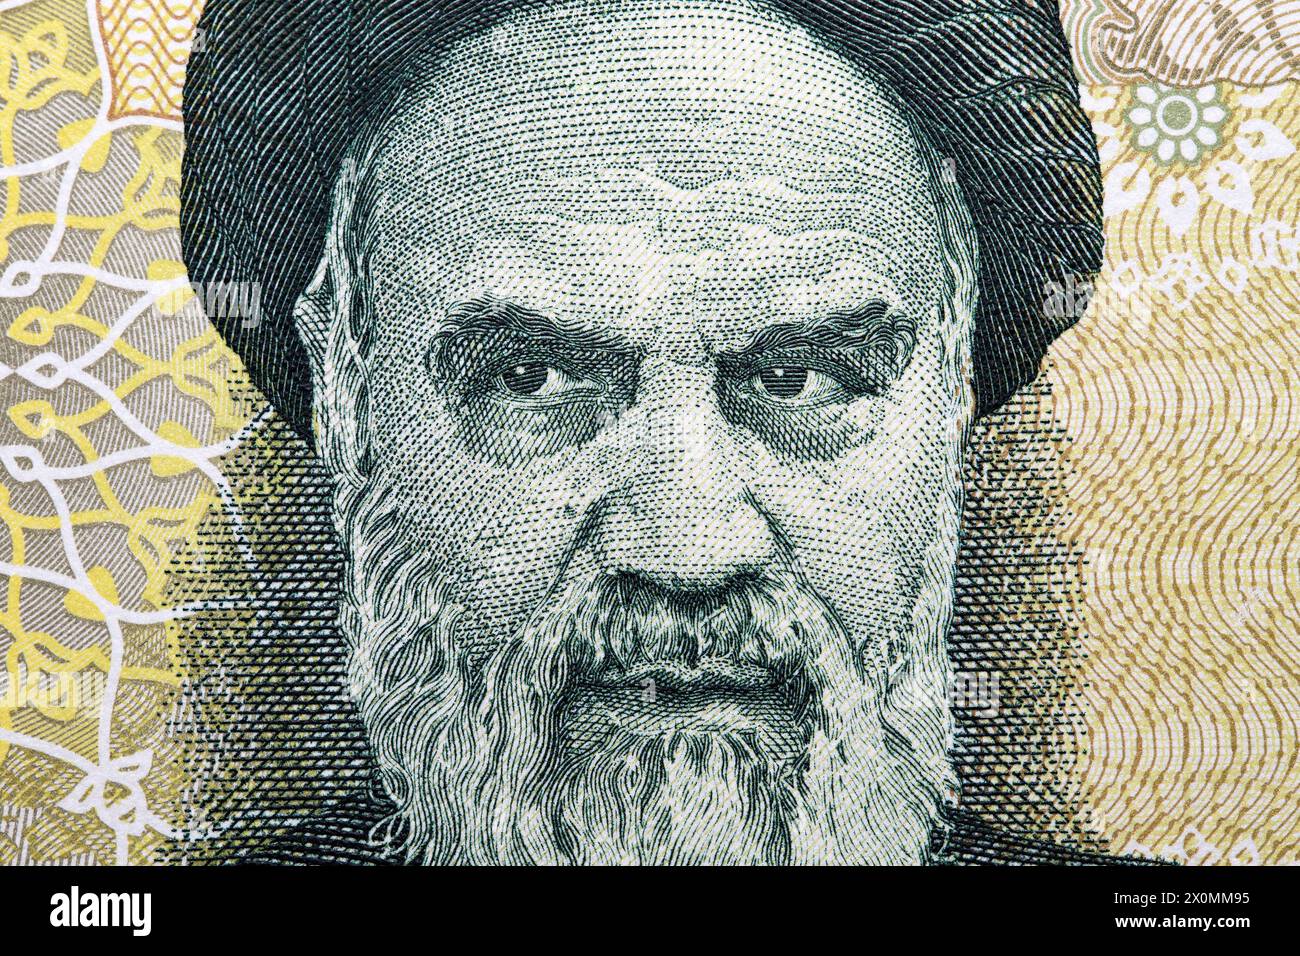 Ruhollah Khomeini ein Nahaufnahme-Porträt aus iranischem Geld - Rial Stockfoto